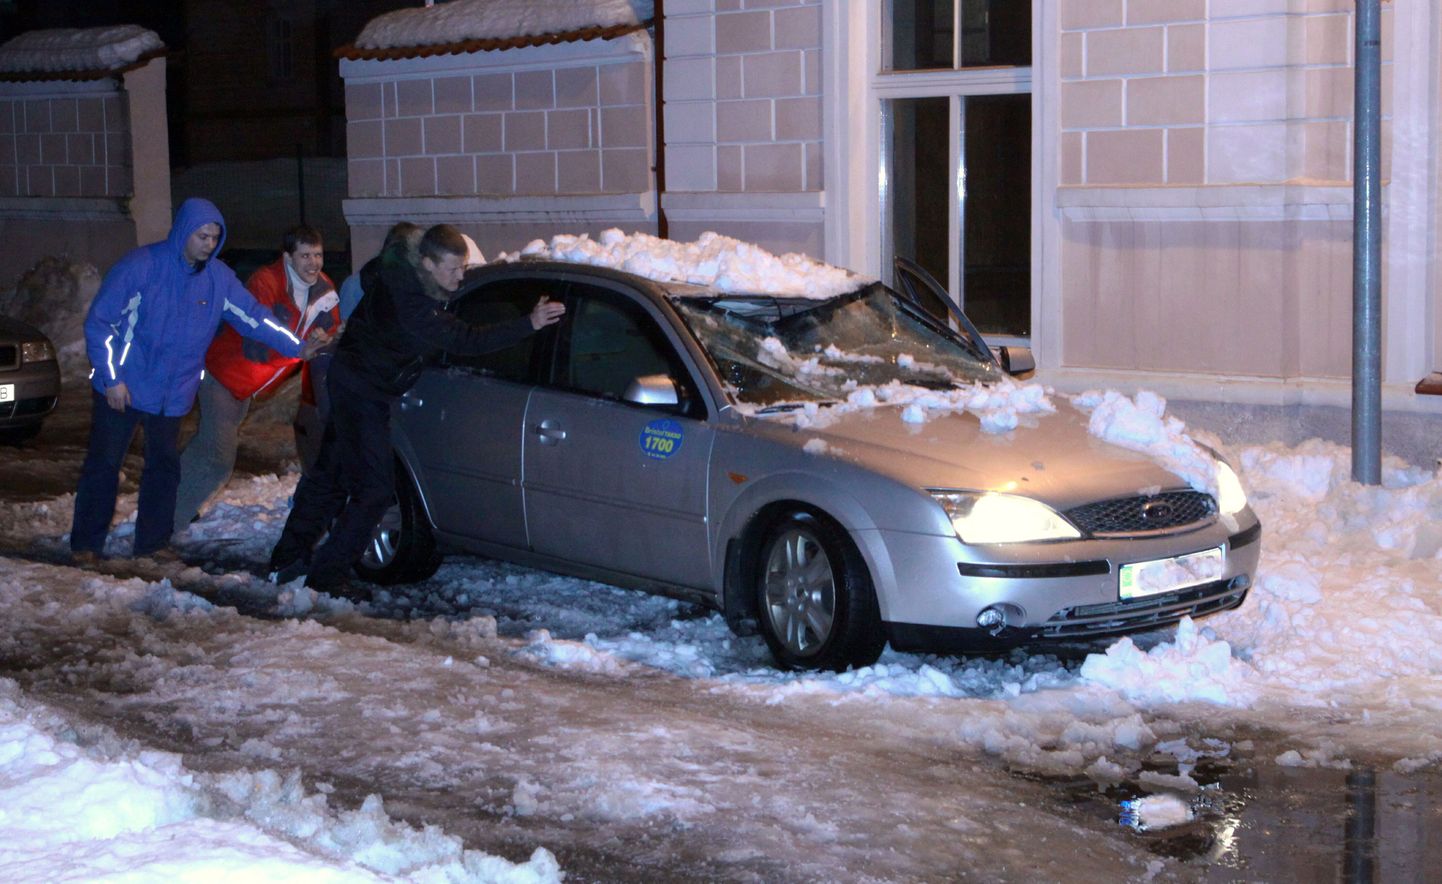 Pärnus Hommiku tänaval seisnud taksole kukkus kesköö paiku kõrval asuva maja katuselt peale lumehunnik, mis lõhkus auto esi- ja küljeklaasi ning lömastas katuse.